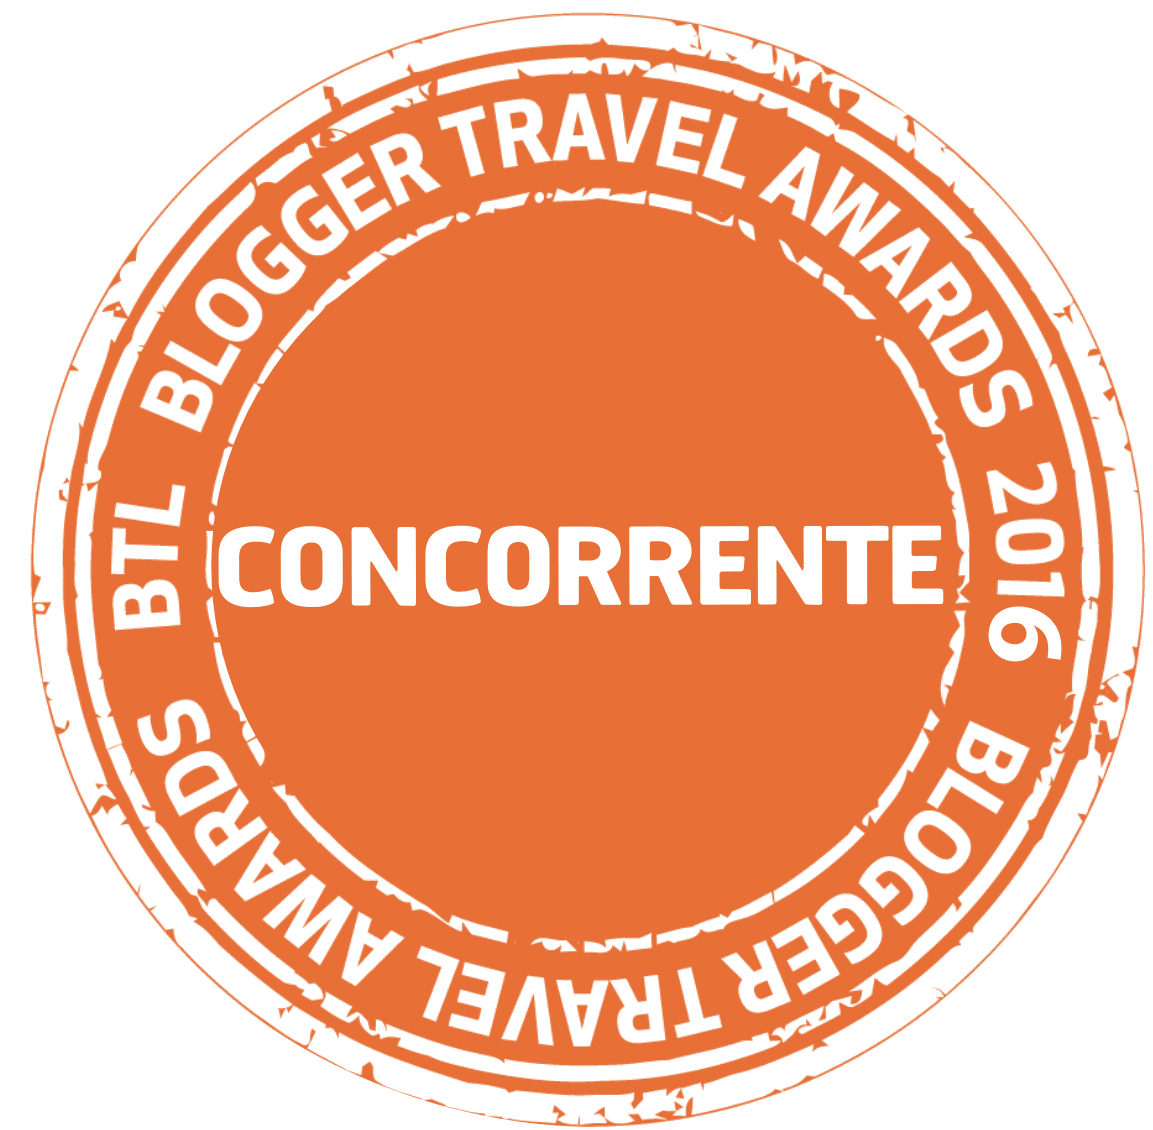 BTL Blogger Travel Awards 2016